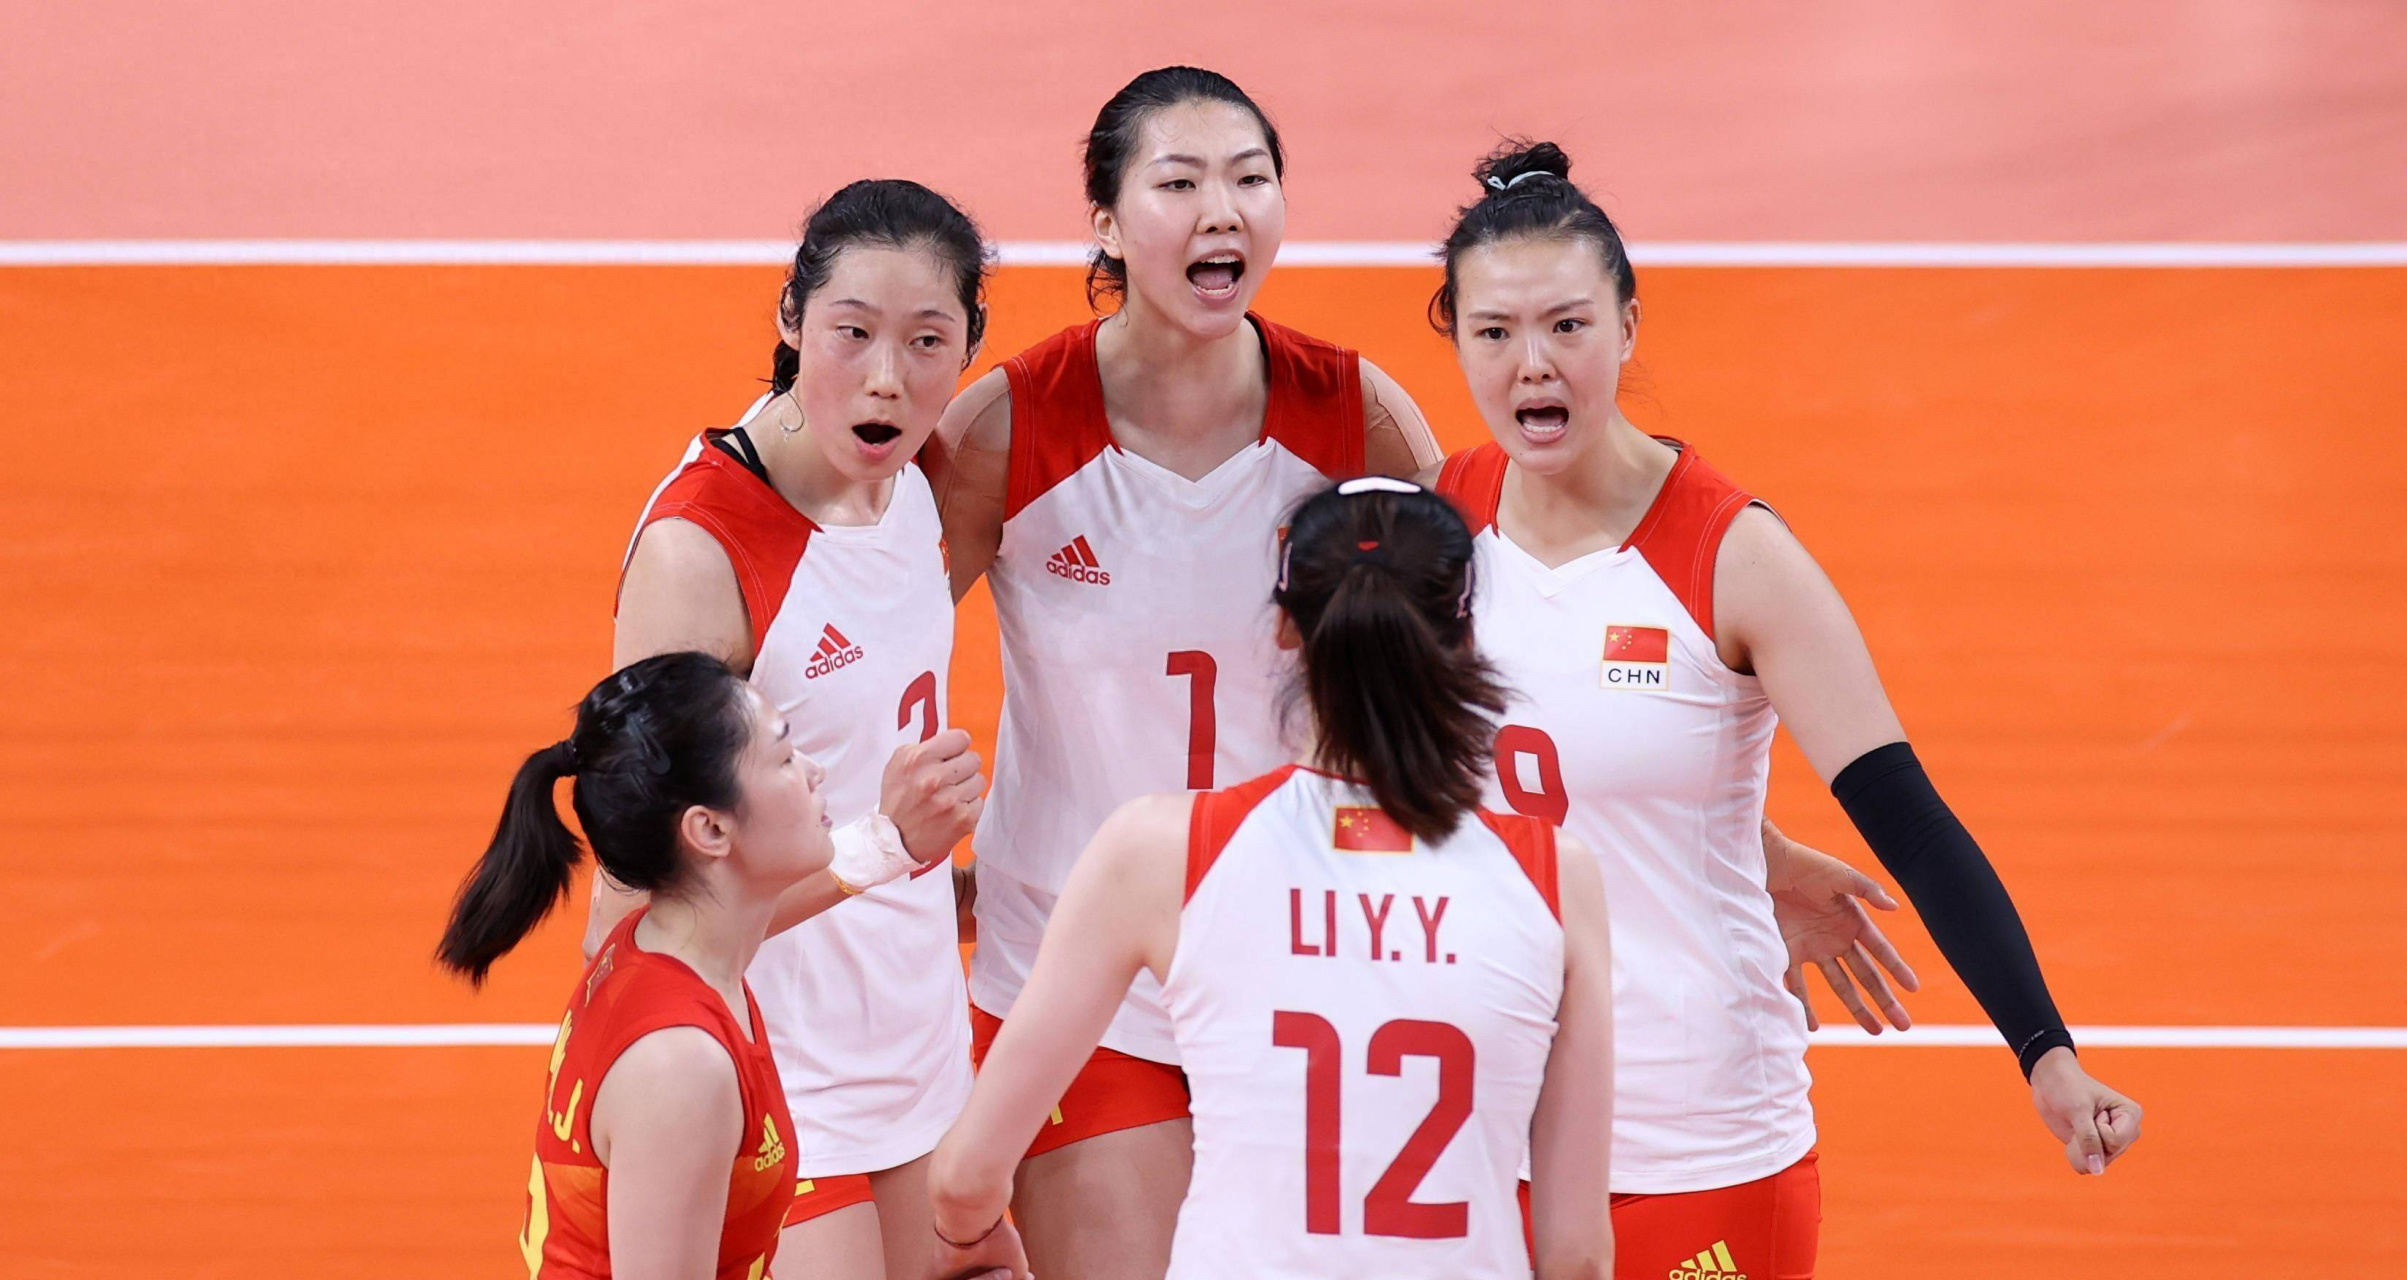 中国女排将与荷兰女排展开奥运门票争夺战,比赛于5月29日晚在澳门进行